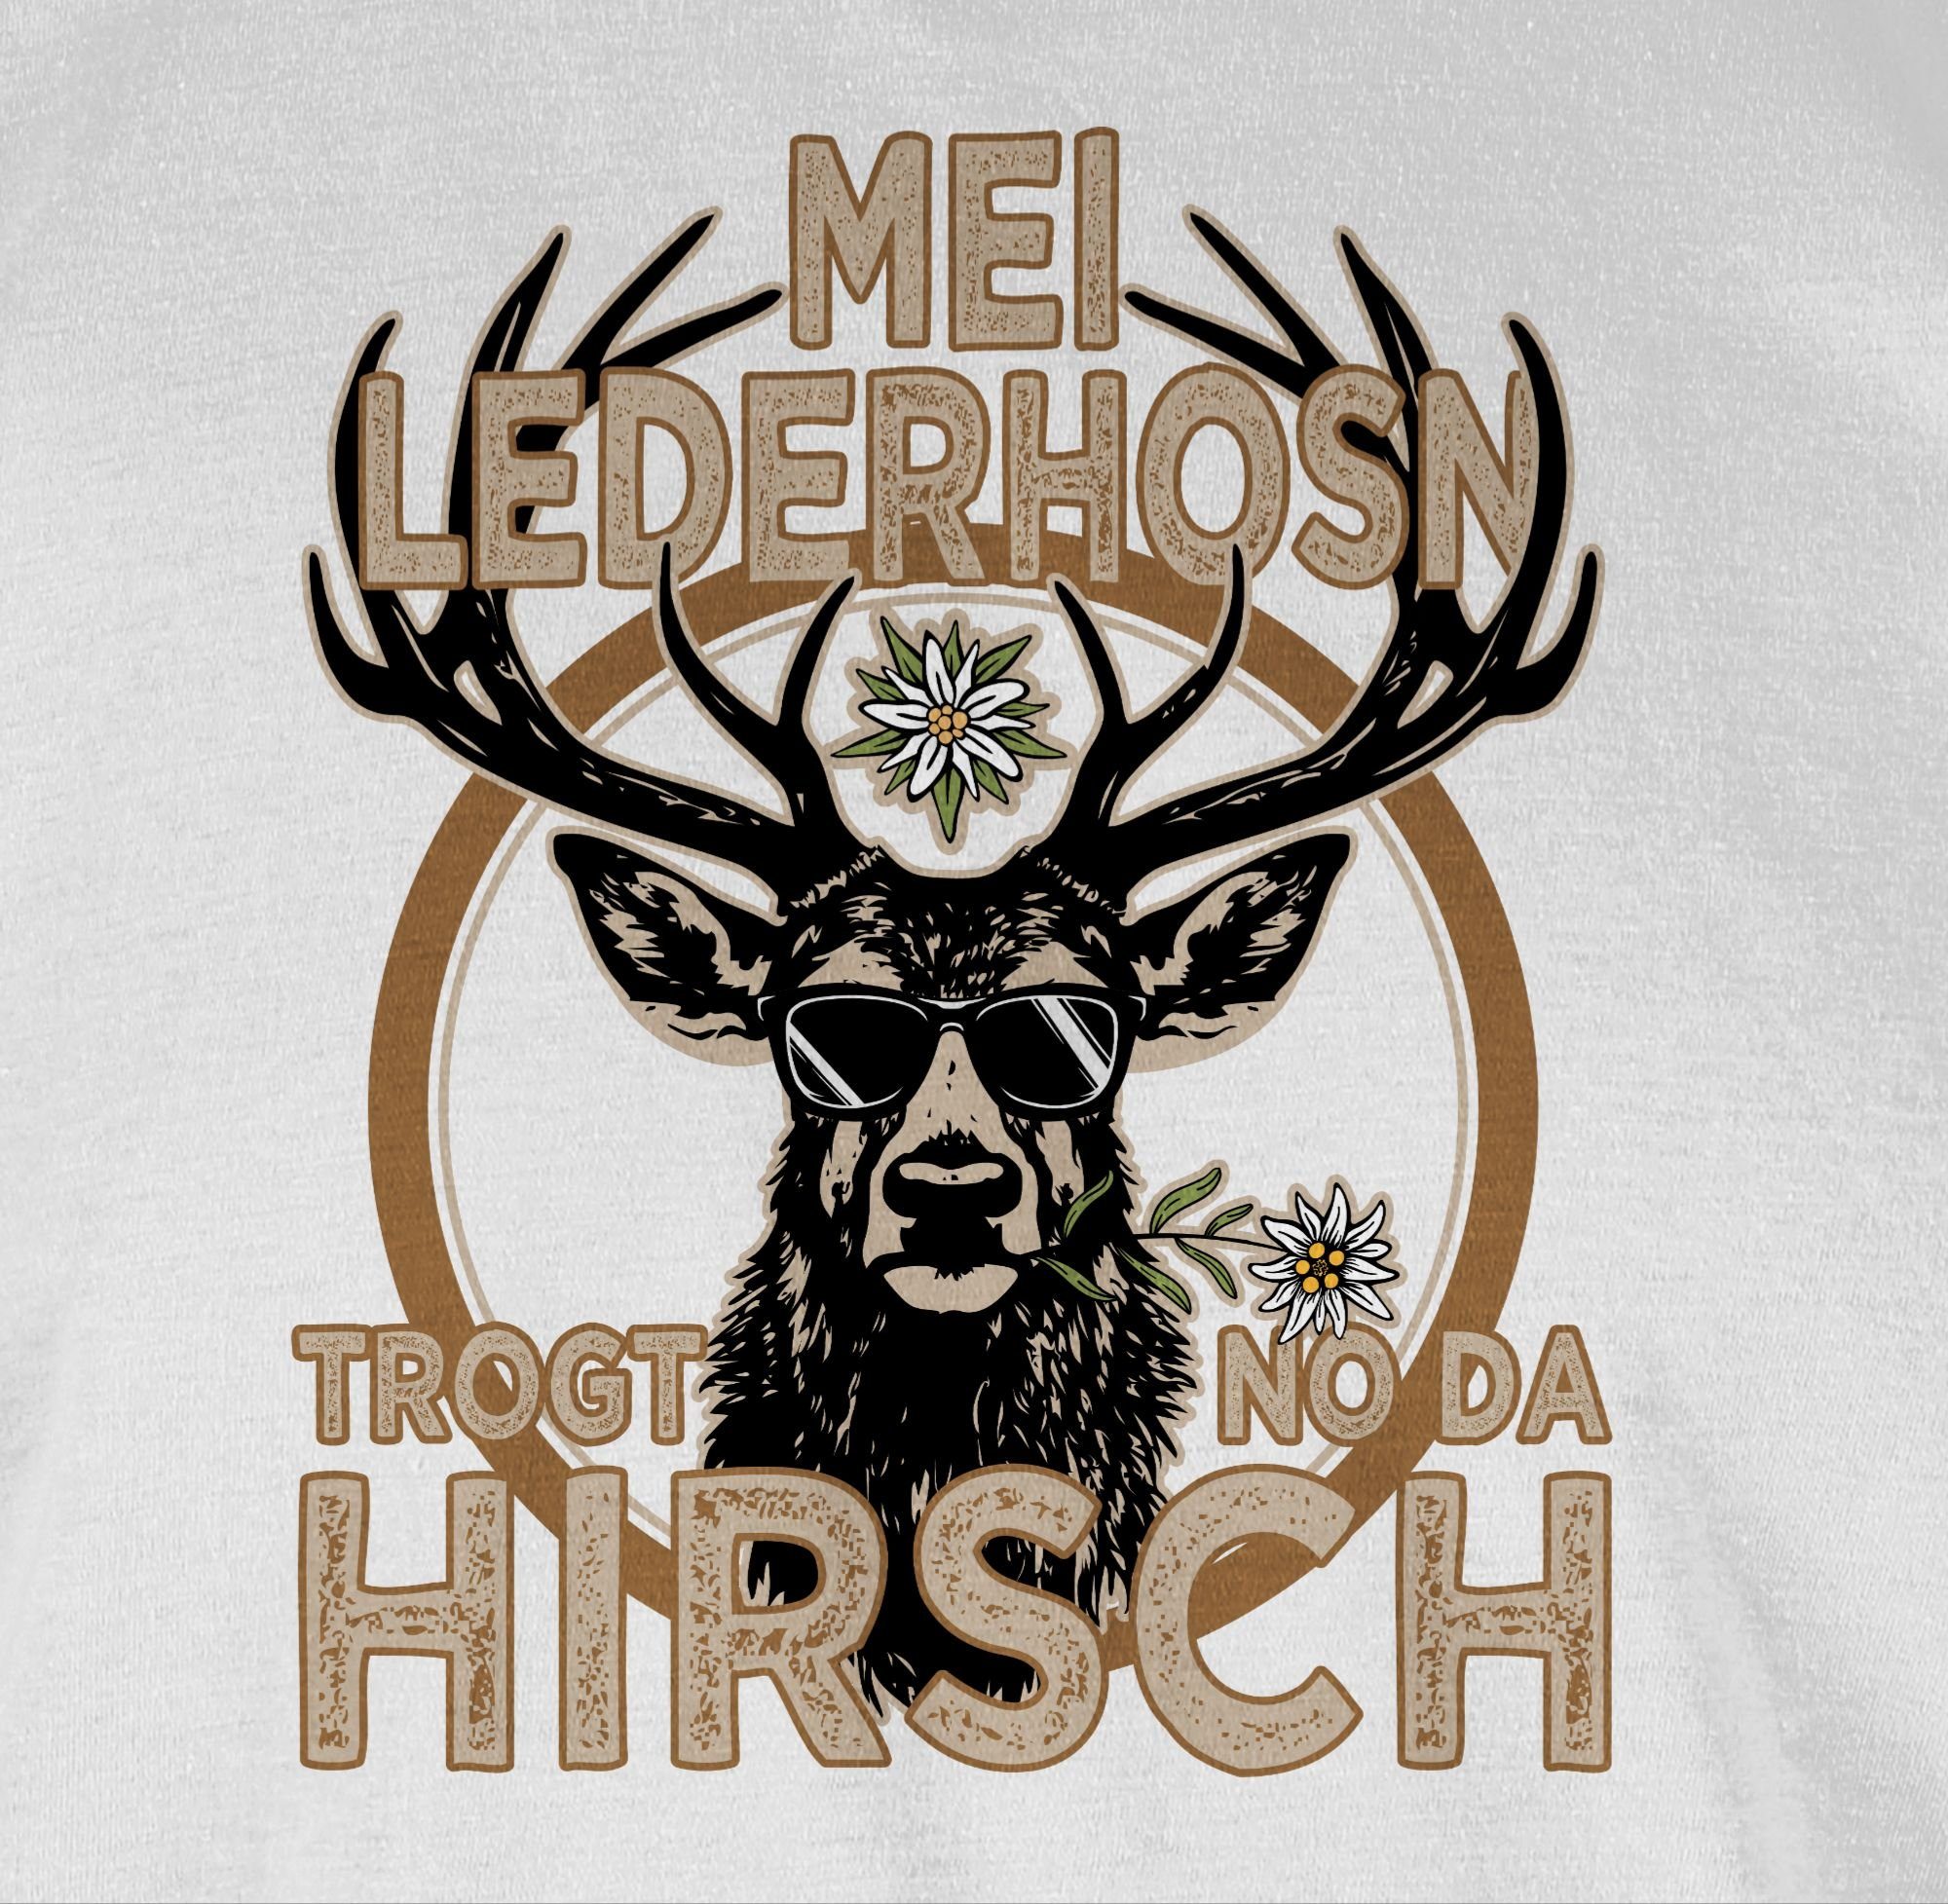 Shirtracer T-Shirt Trachten Outfit Lederhose Trägt Oktoberfest für Mode der Hirsch Herren 03 Weiß Spruch